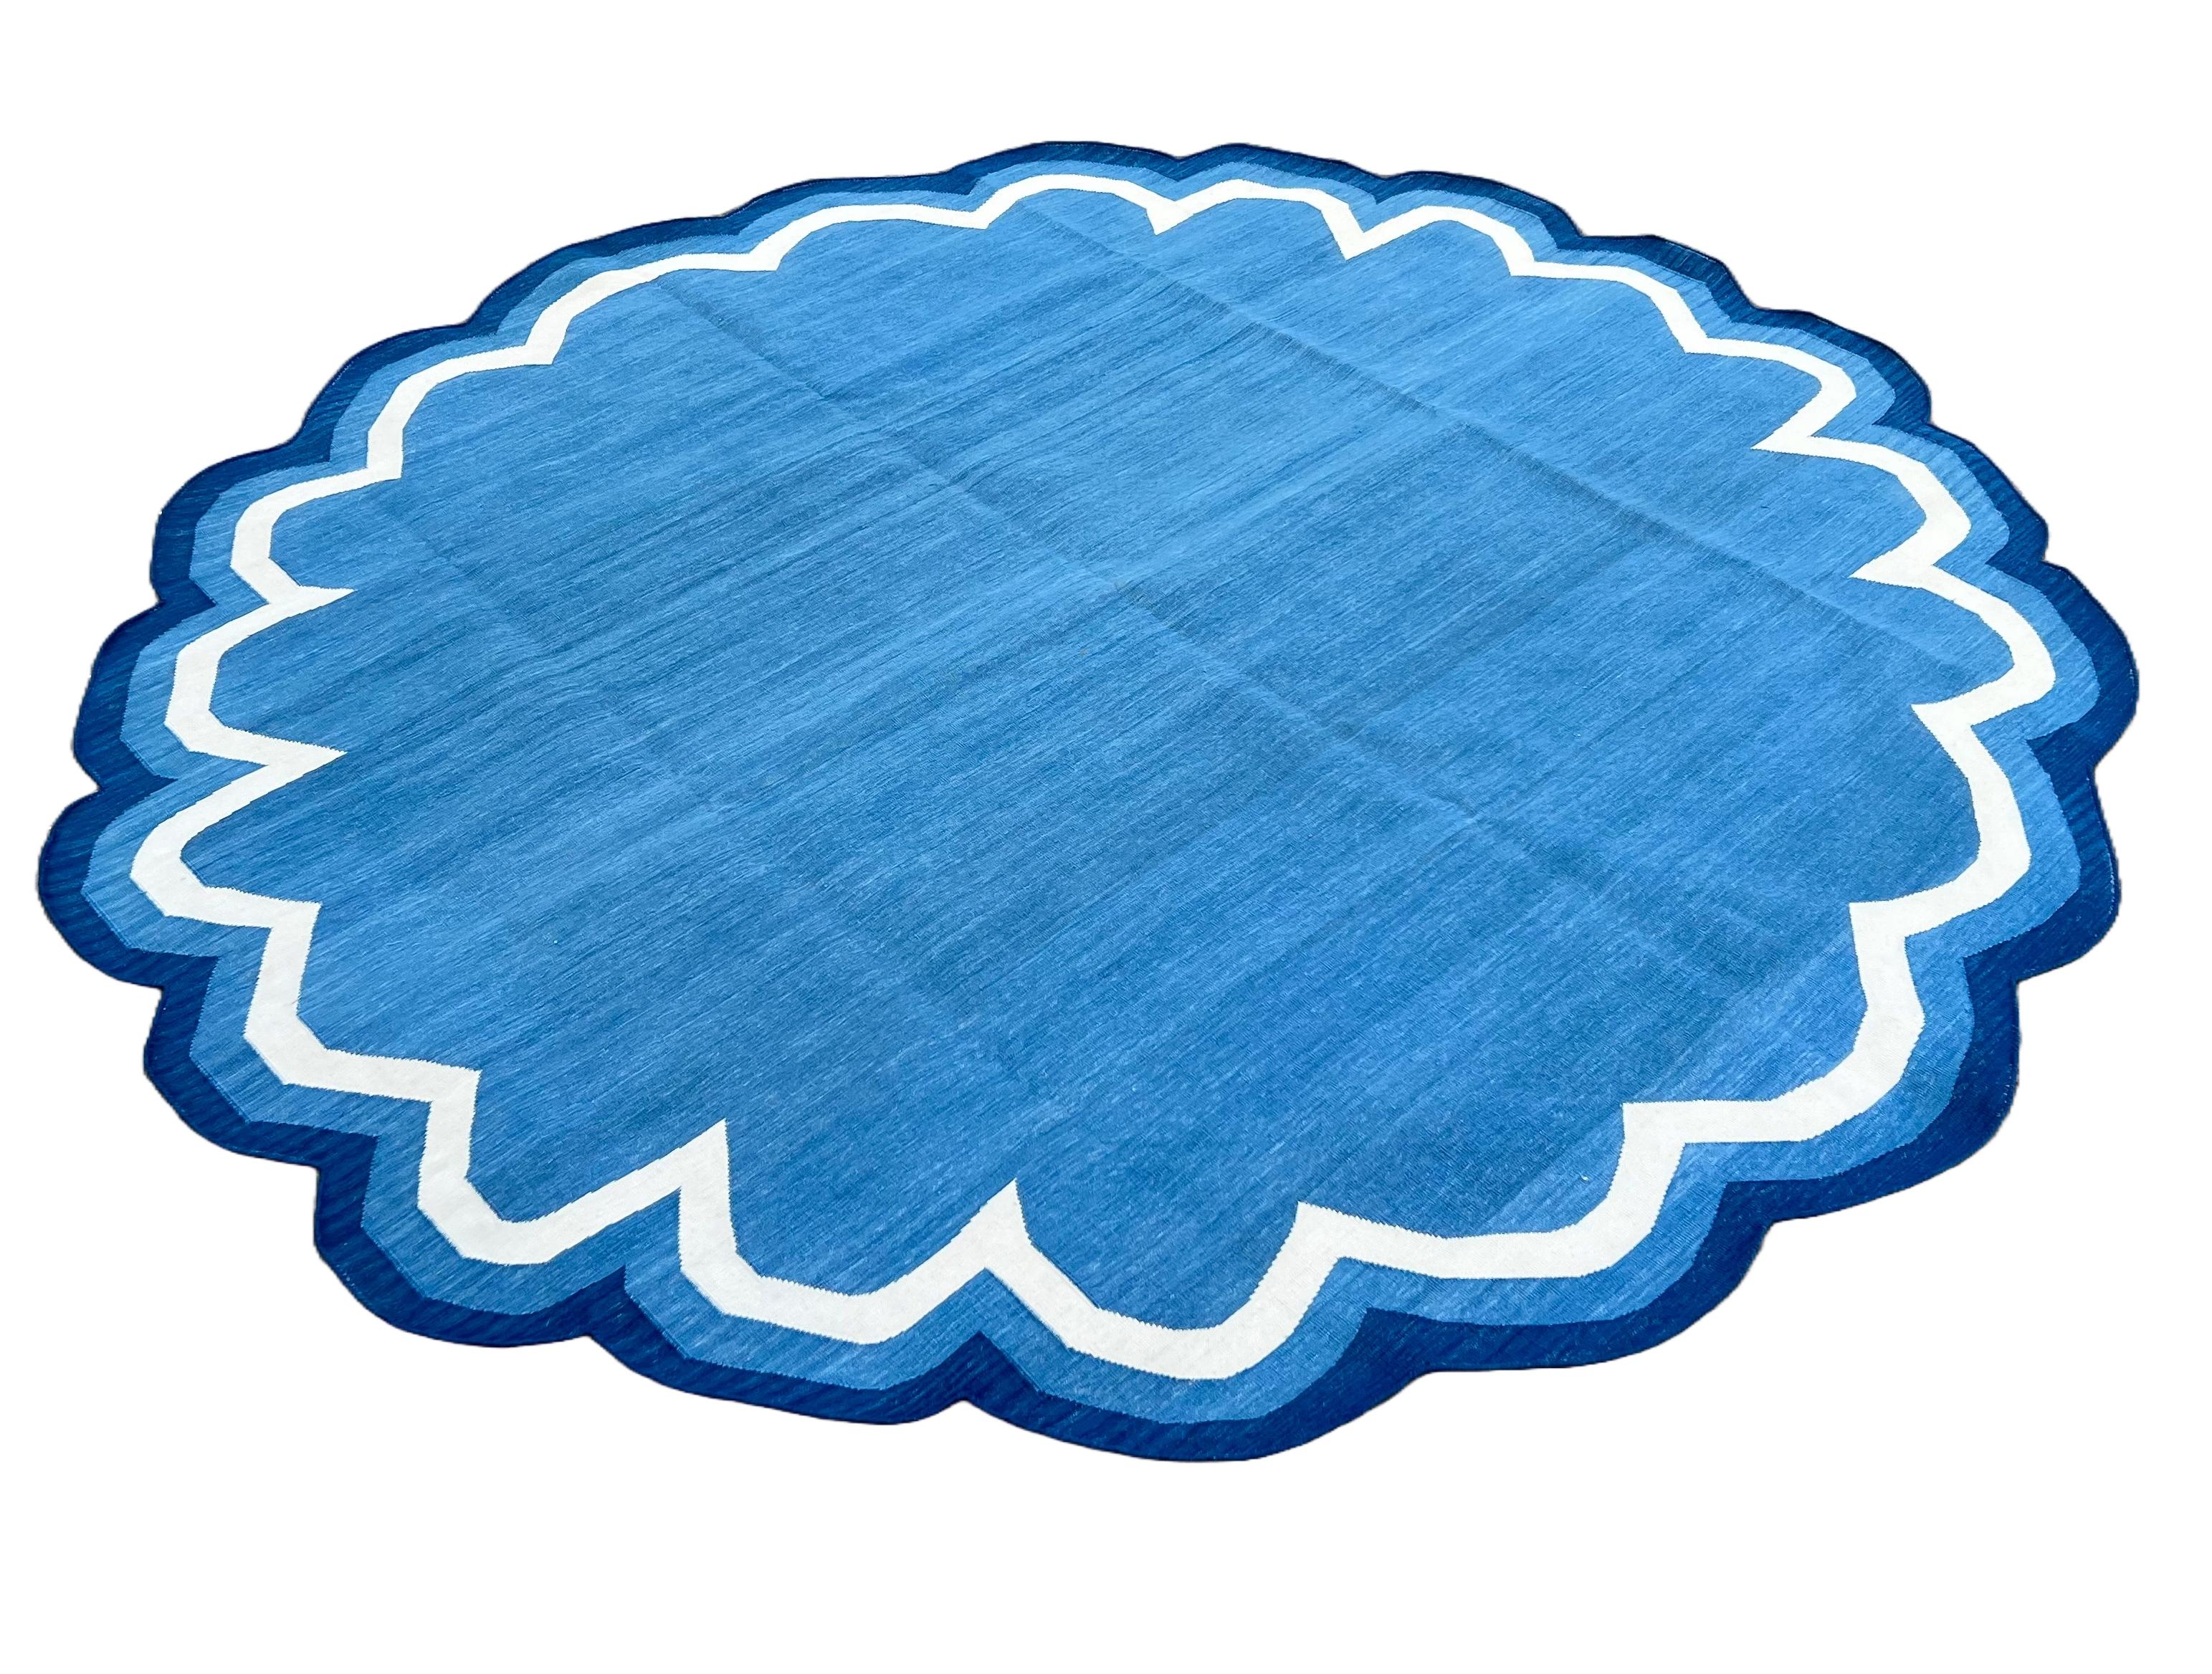 Baumwolle pflanzlich gefärbt Indigo Blau & Weiß Runde Scalloped Teppich-6' Día 
Diese speziellen flachgewebten Dhurries werden aus 15-fachem Garn aus 100% Baumwolle handgewebt. Aufgrund der speziellen Fertigungstechniken, die zur Herstellung unserer